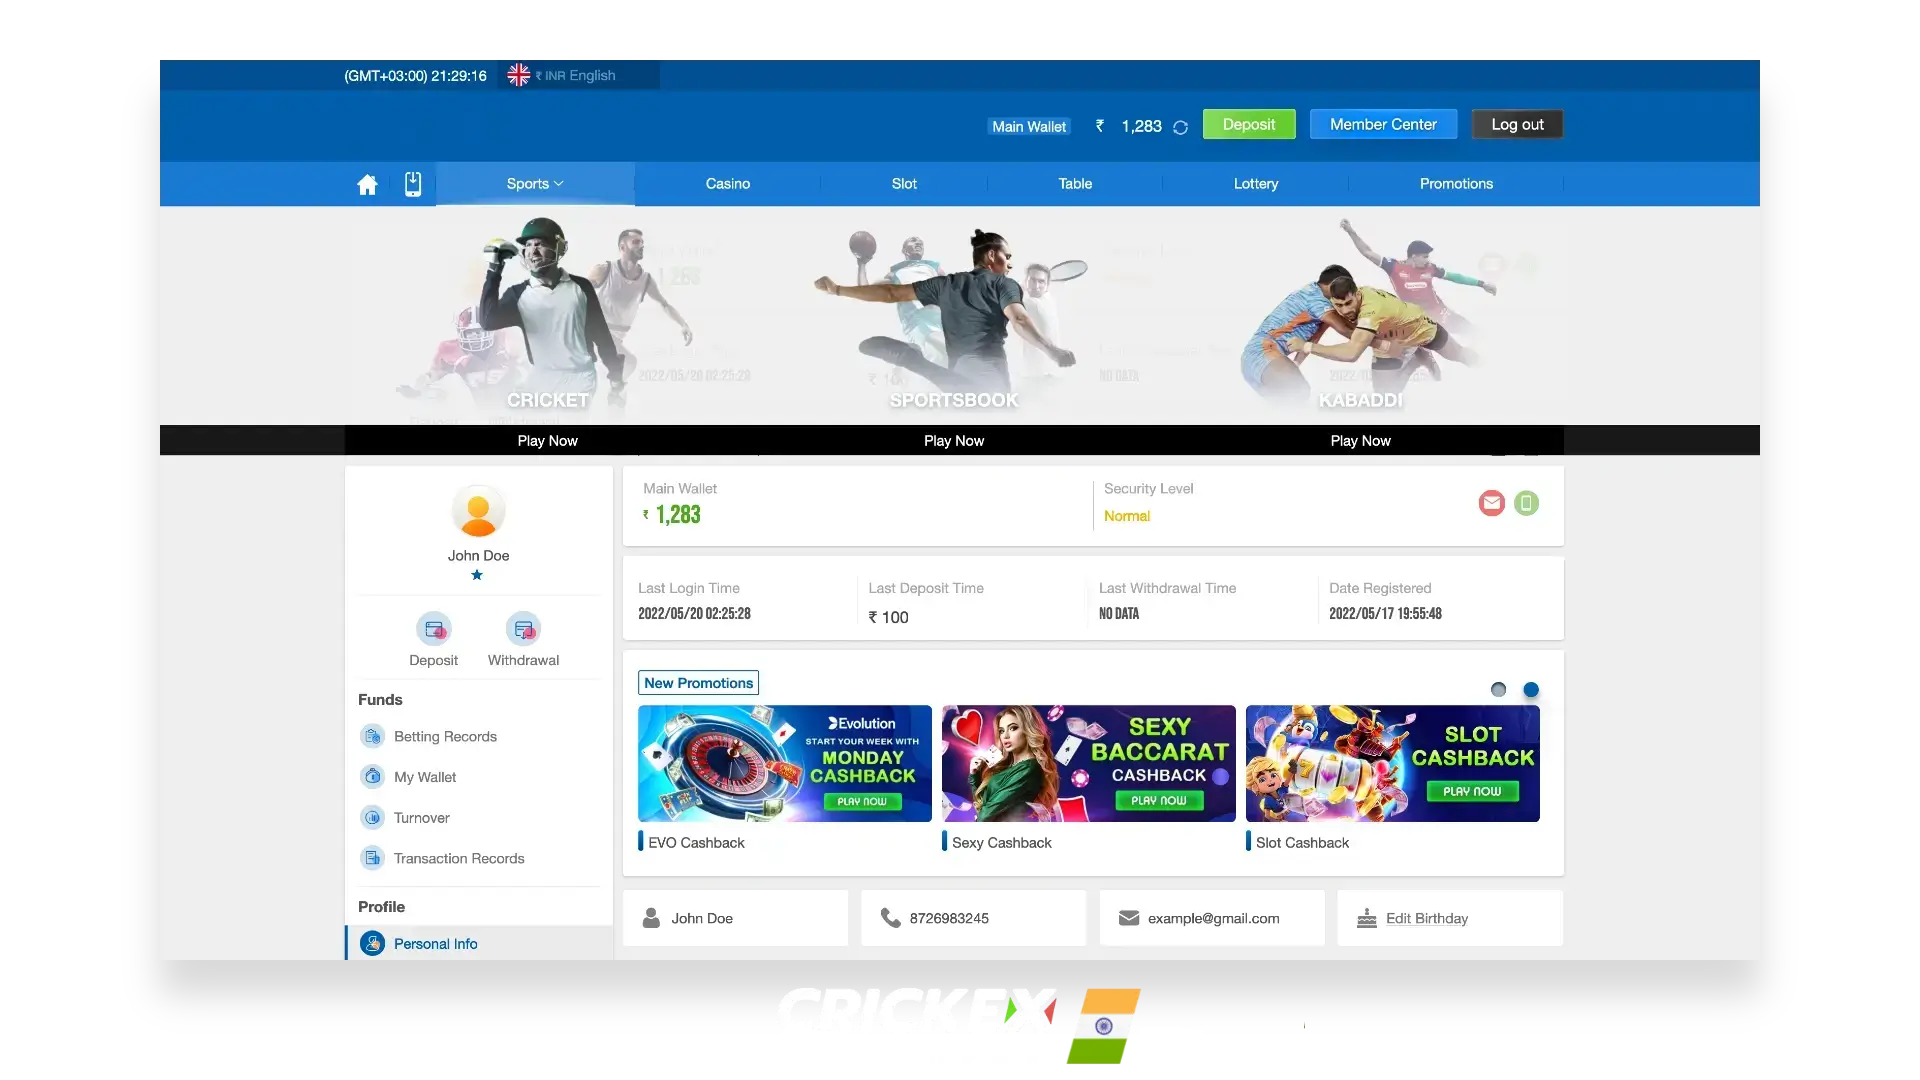 भारत और बांग्लादेश में खेल सट्टेबाजी और कैसीनो खेलों के लिए आधिकारिक Crickex वेबसाइट